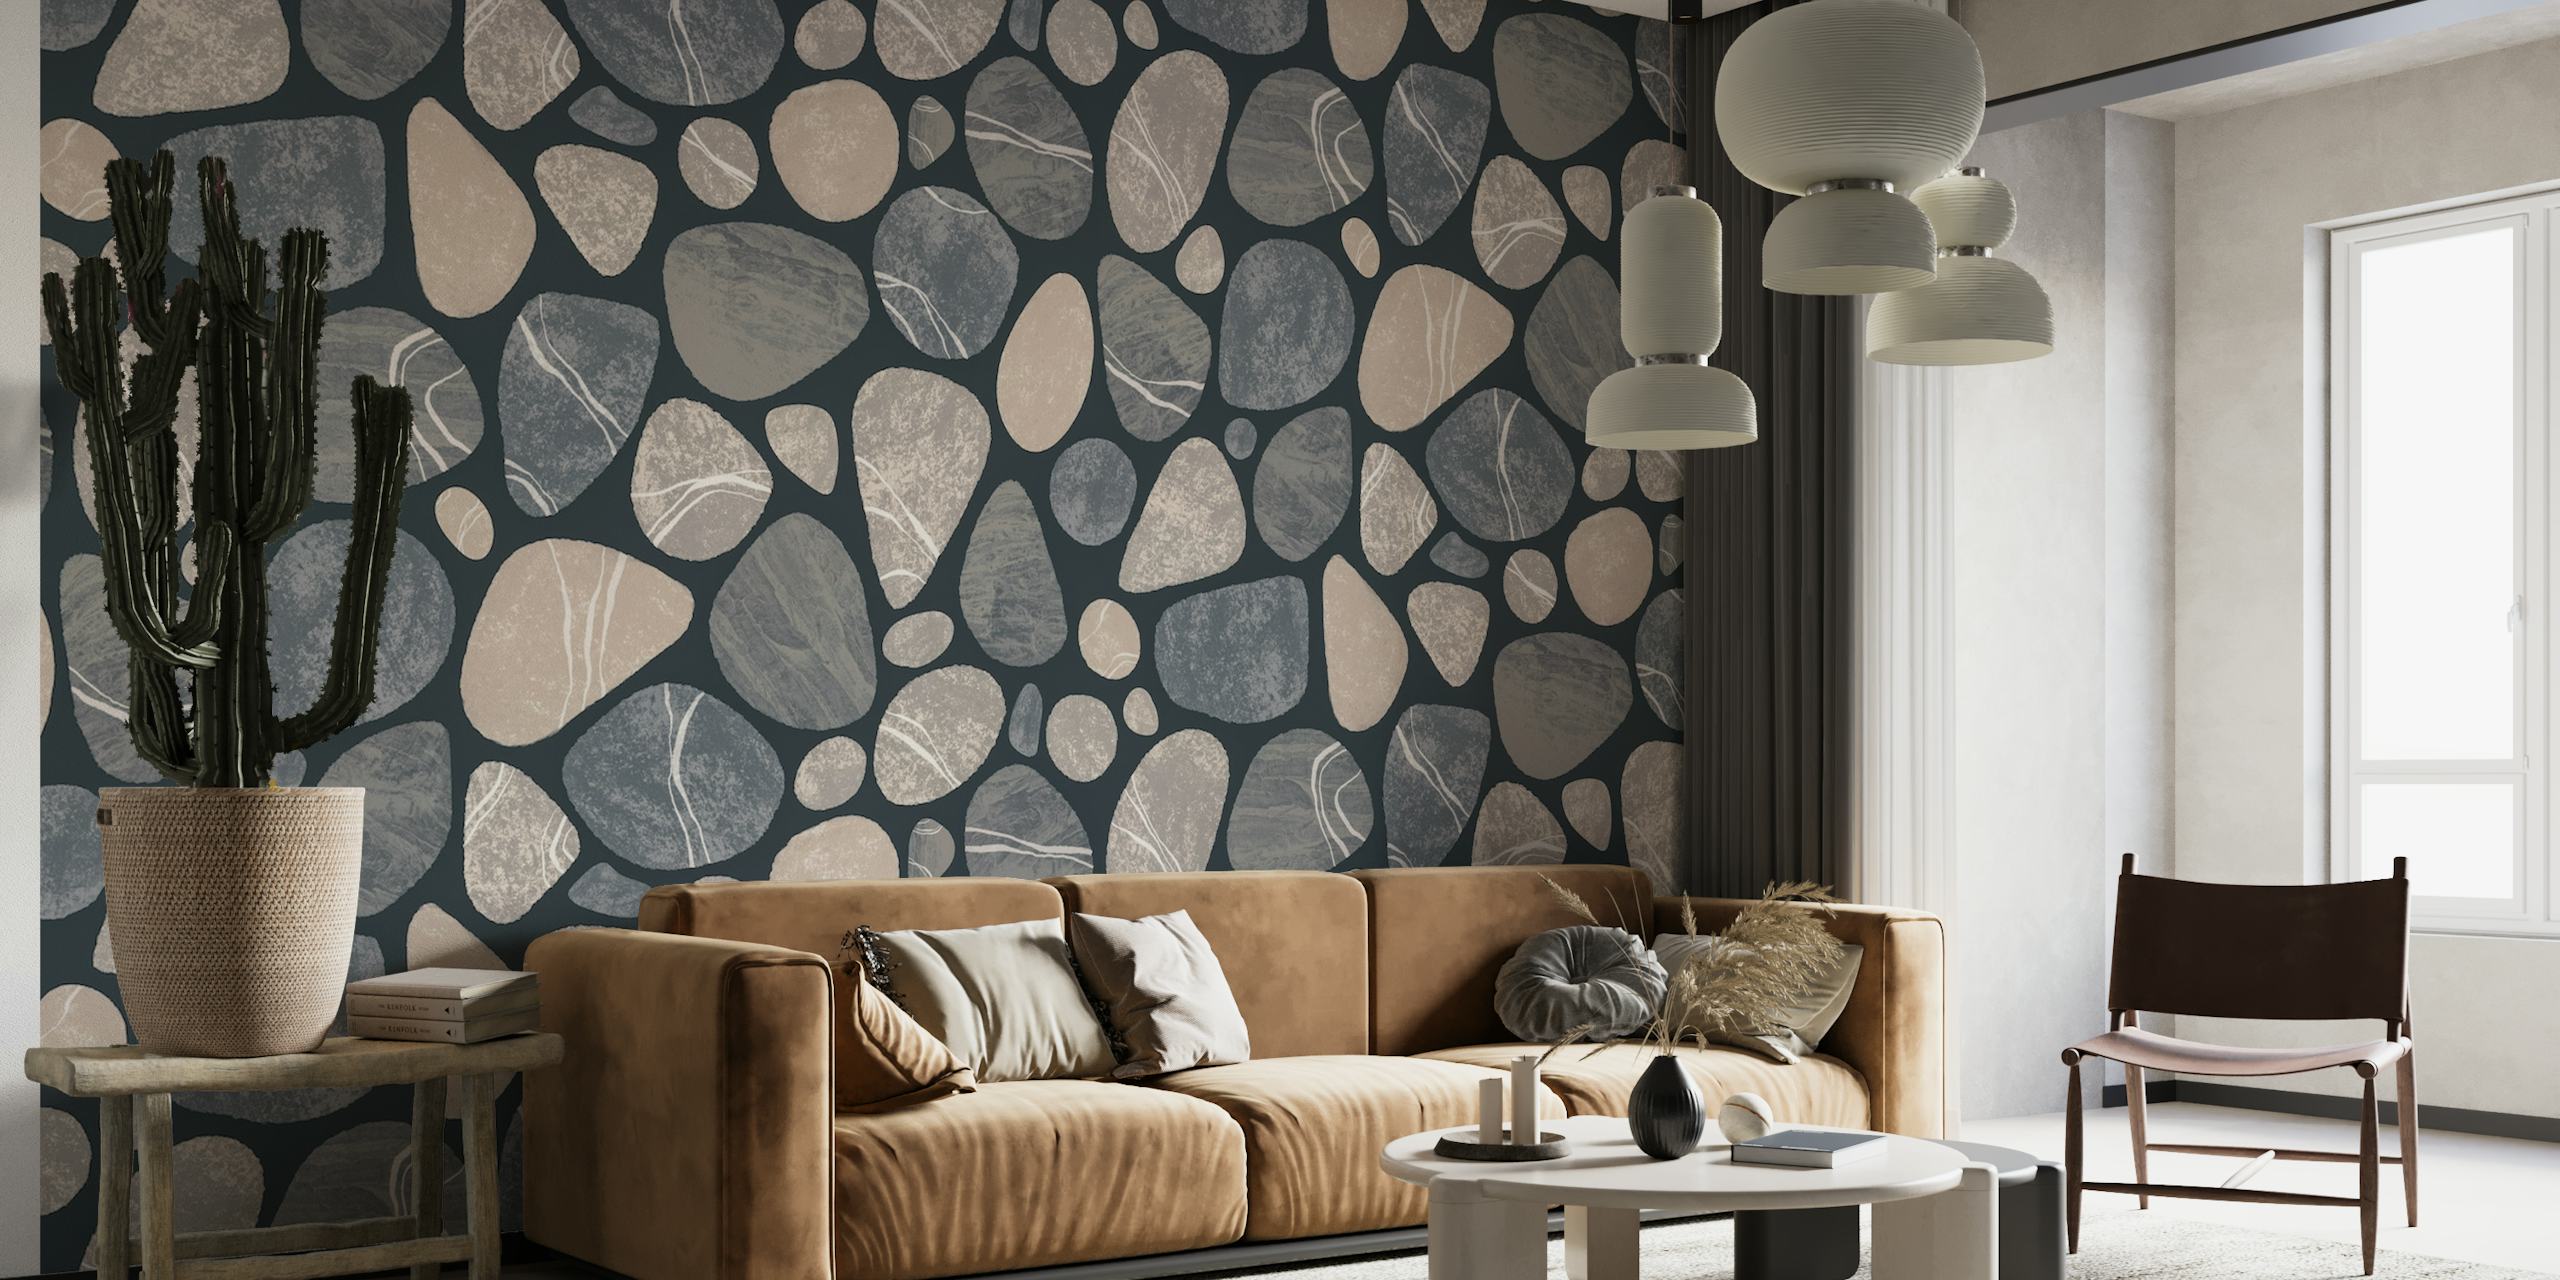 Beige en grijze muurschildering met kiezelstenenpatroon voor een op de natuur geïnspireerd interieur.